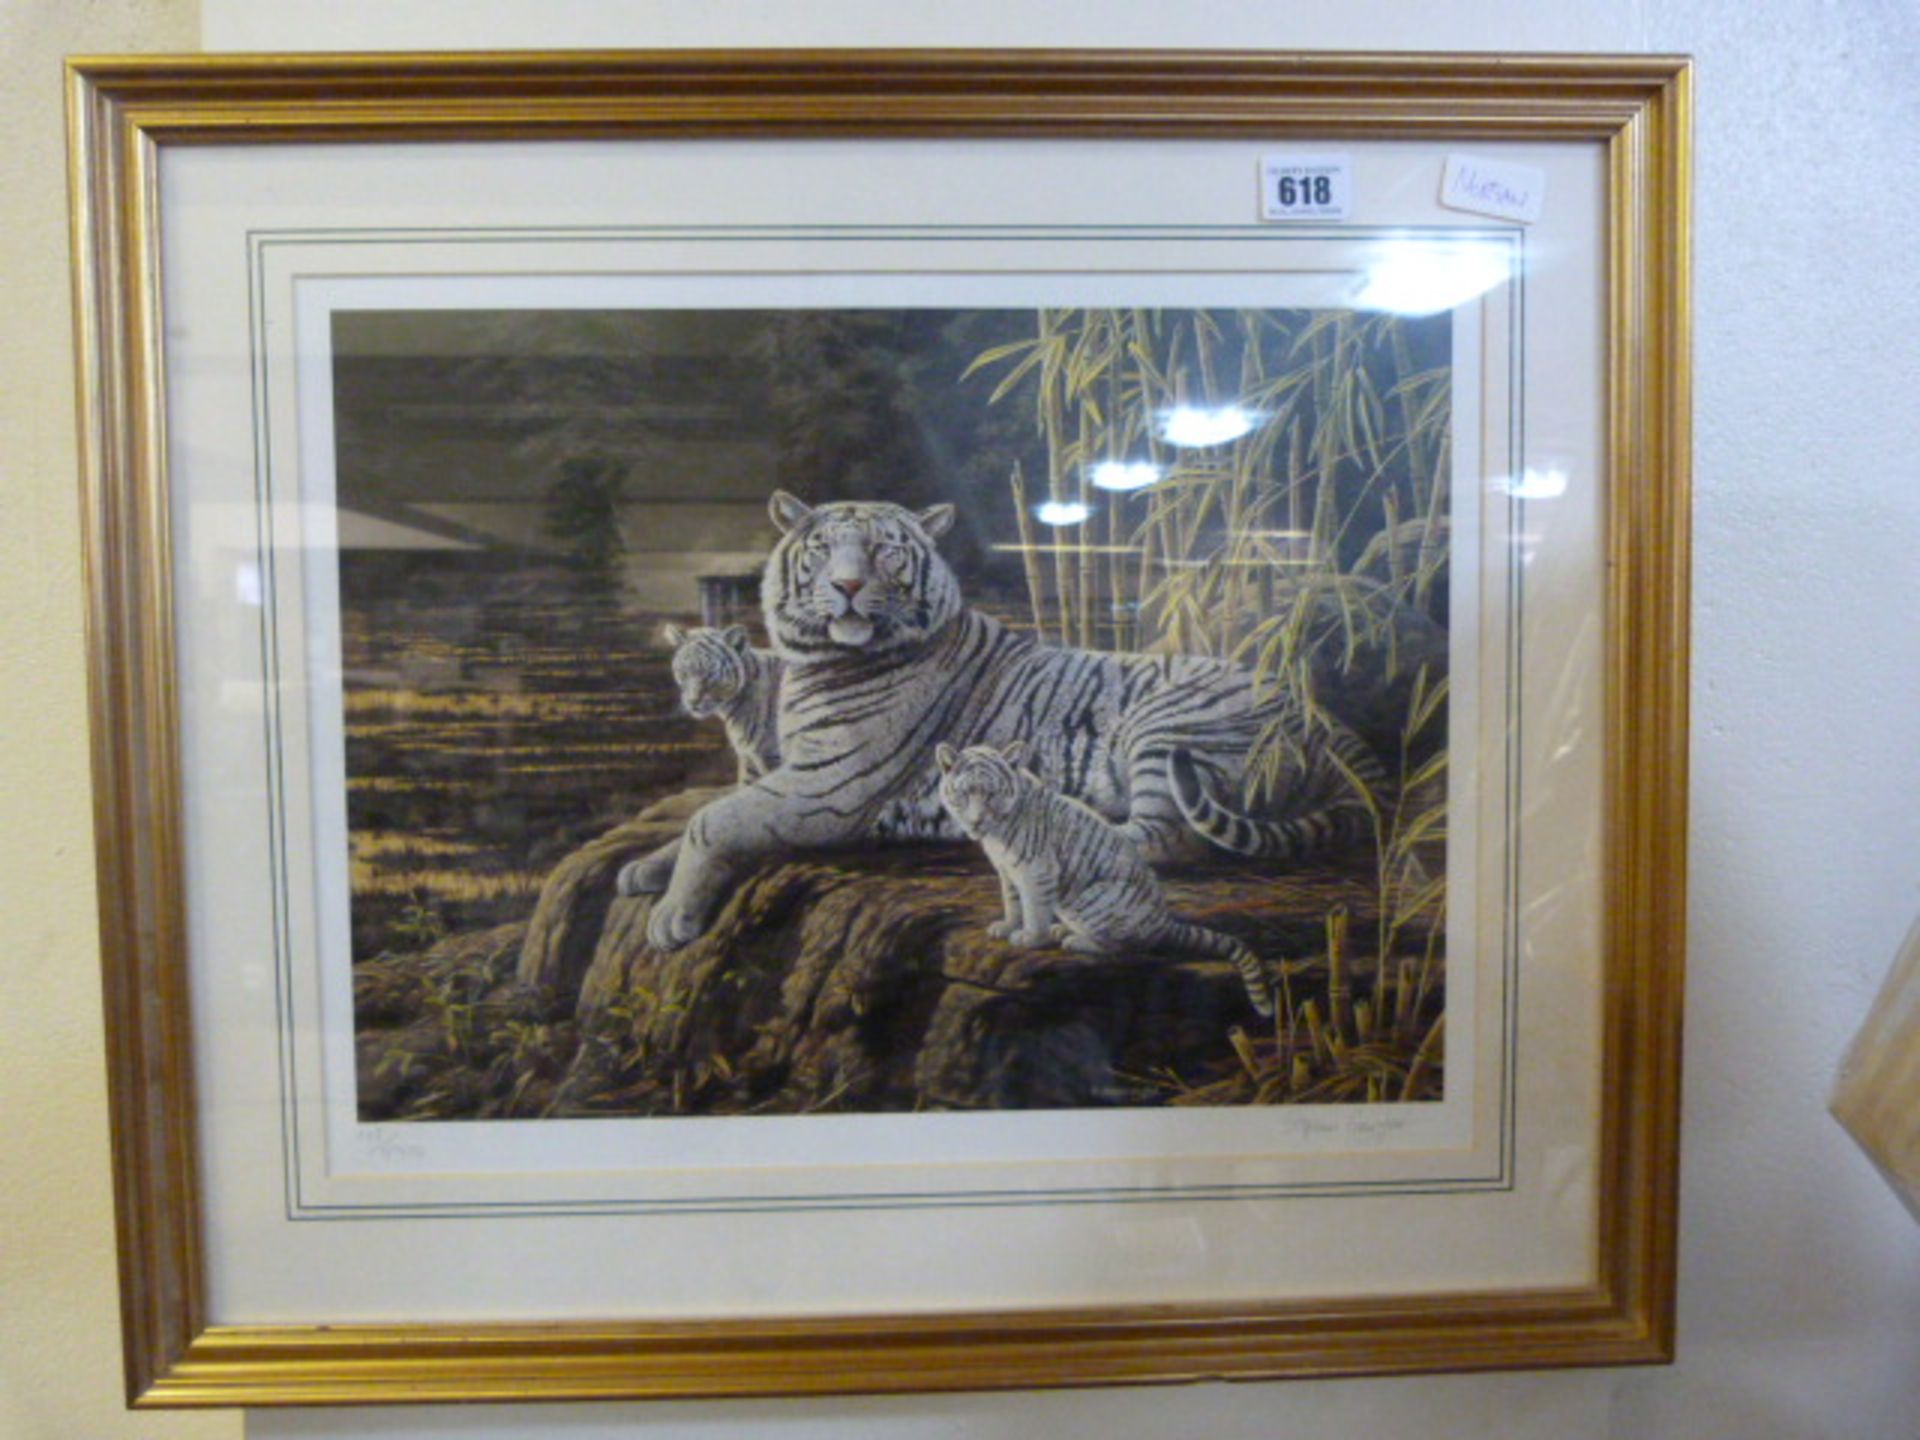 Gilt Framed Steven Gayford Print Depicting Tigers